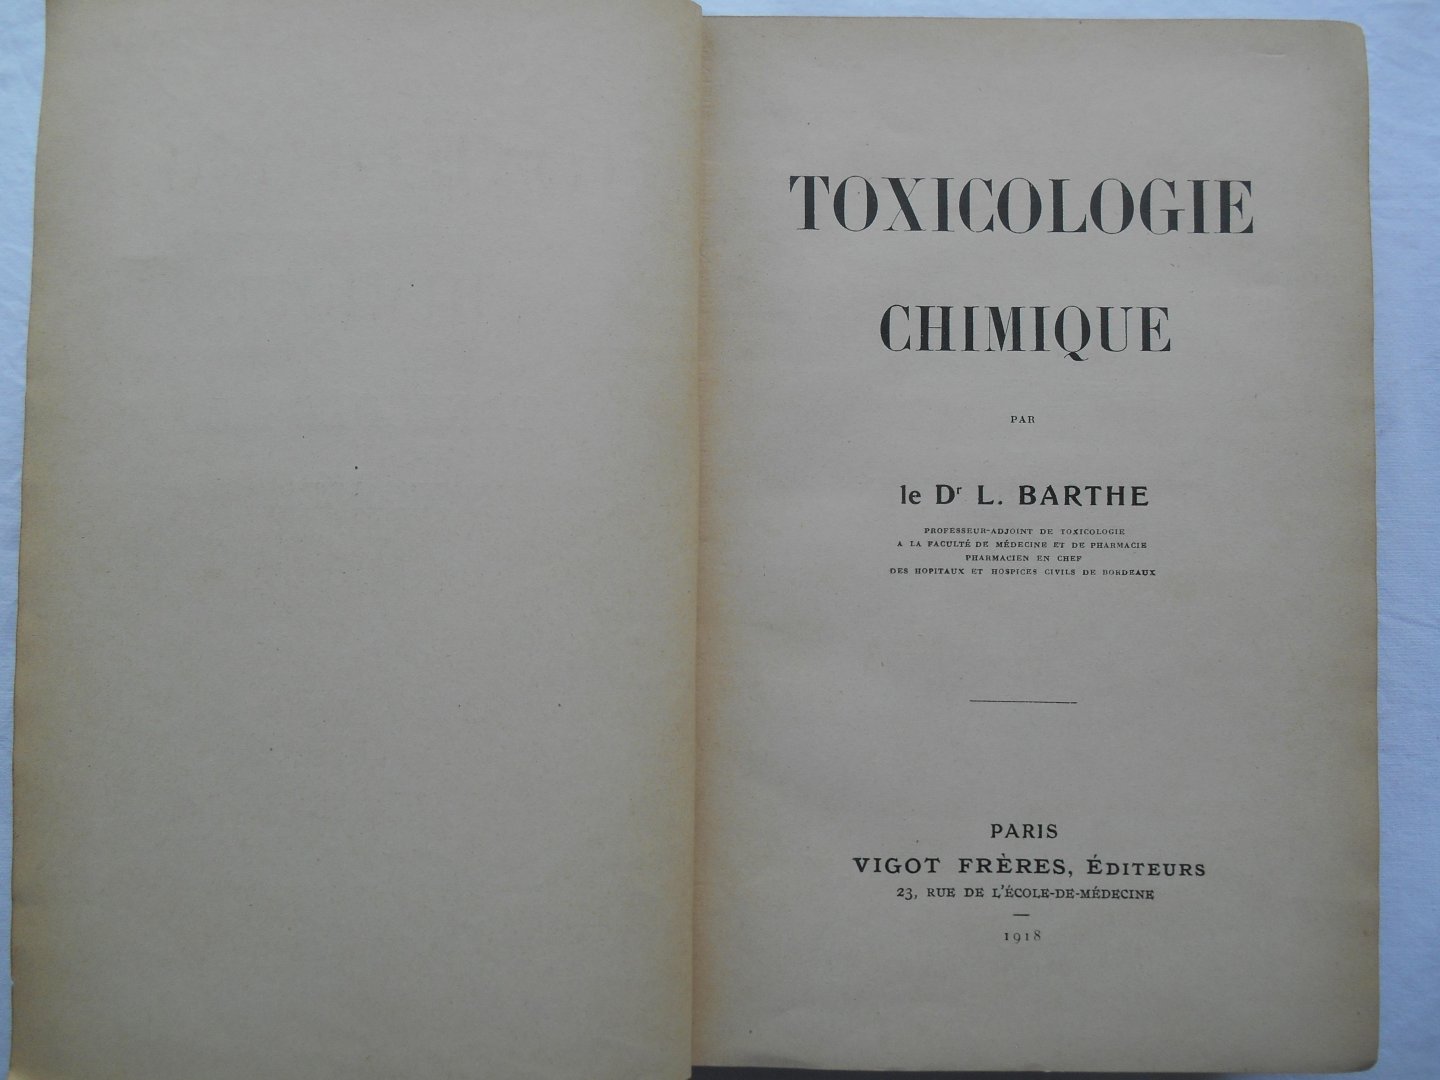 Dr L. Barthe - Toxicologie Chimique